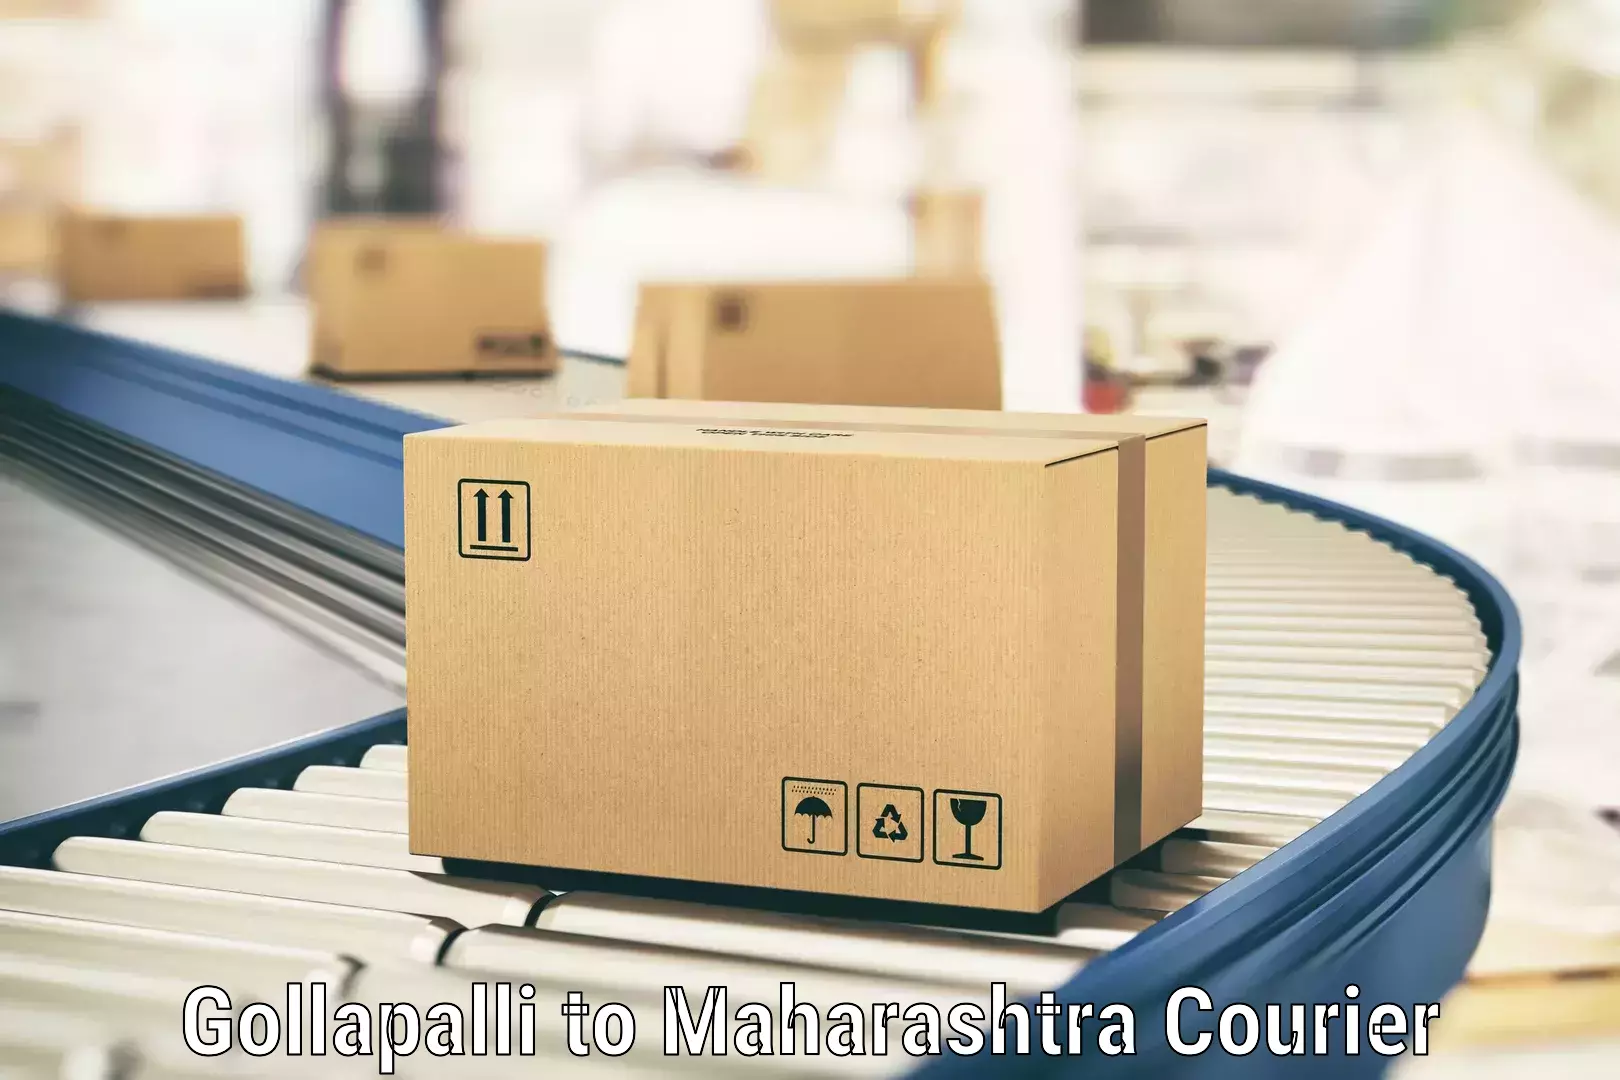 Efficient courier operations Gollapalli to Dr Babasaheb Ambedkar Marathwada University Aurangabad